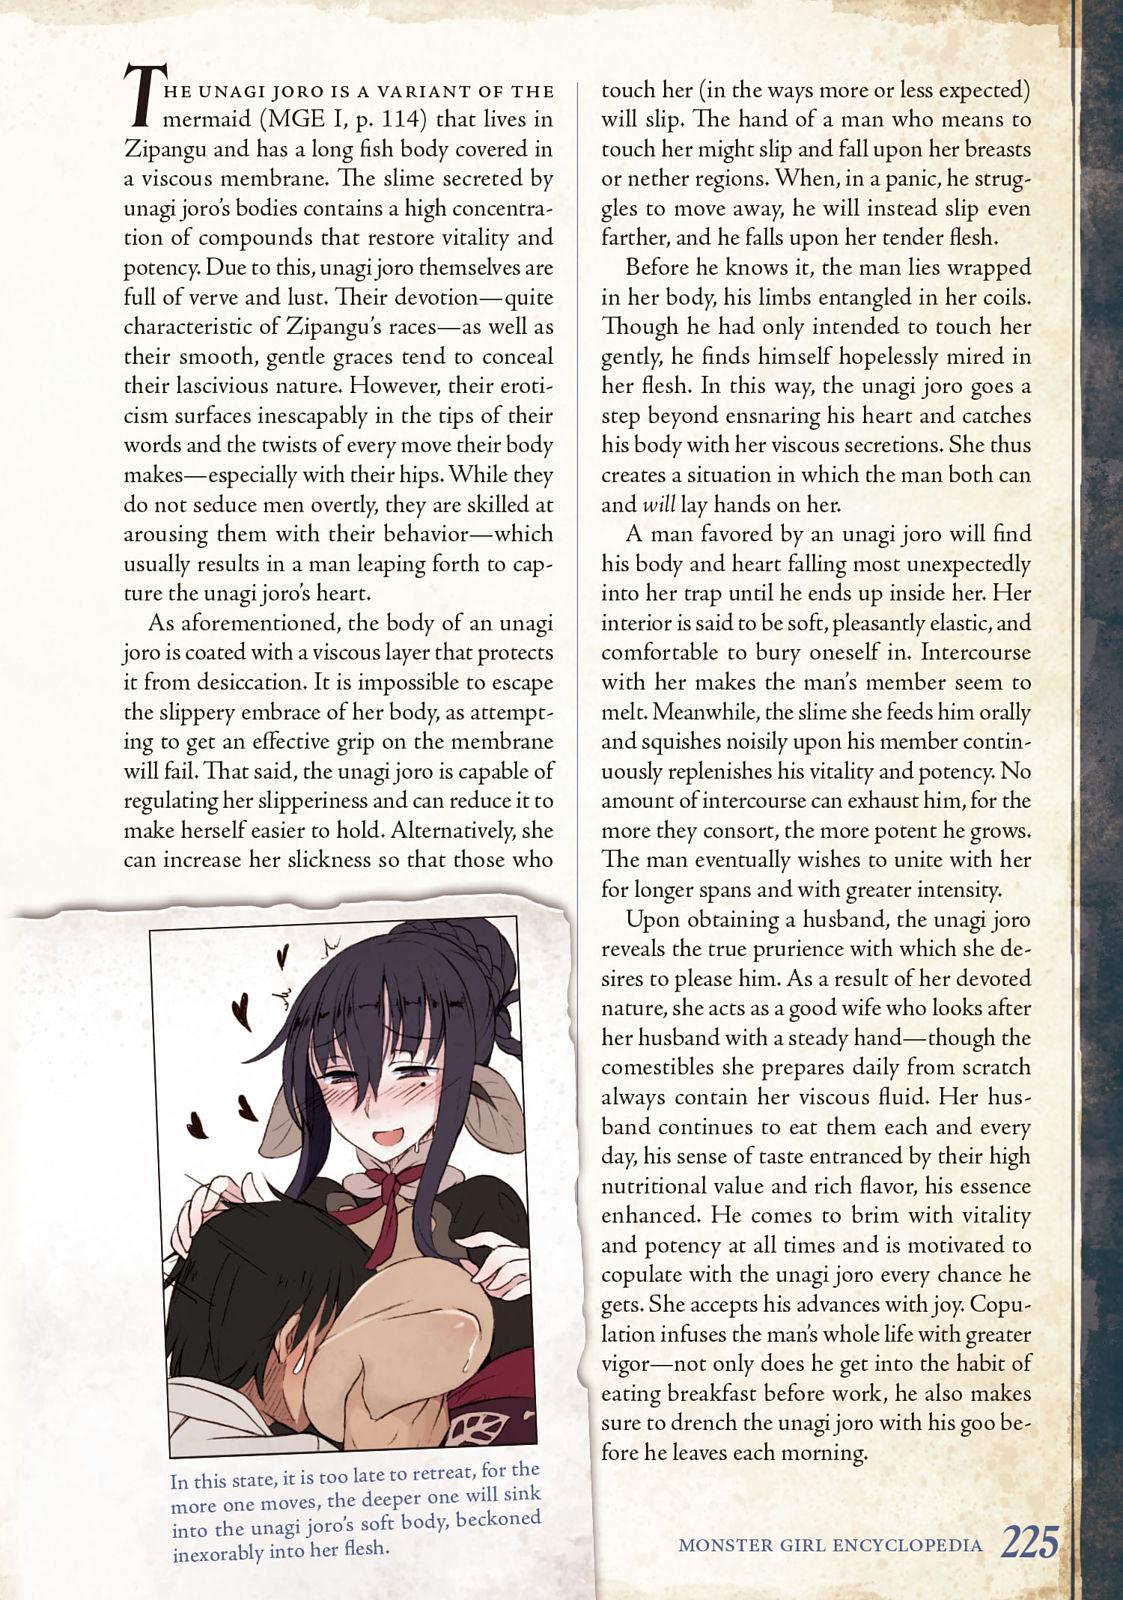 Monster Girl Encyclopedia Vol. 2 225